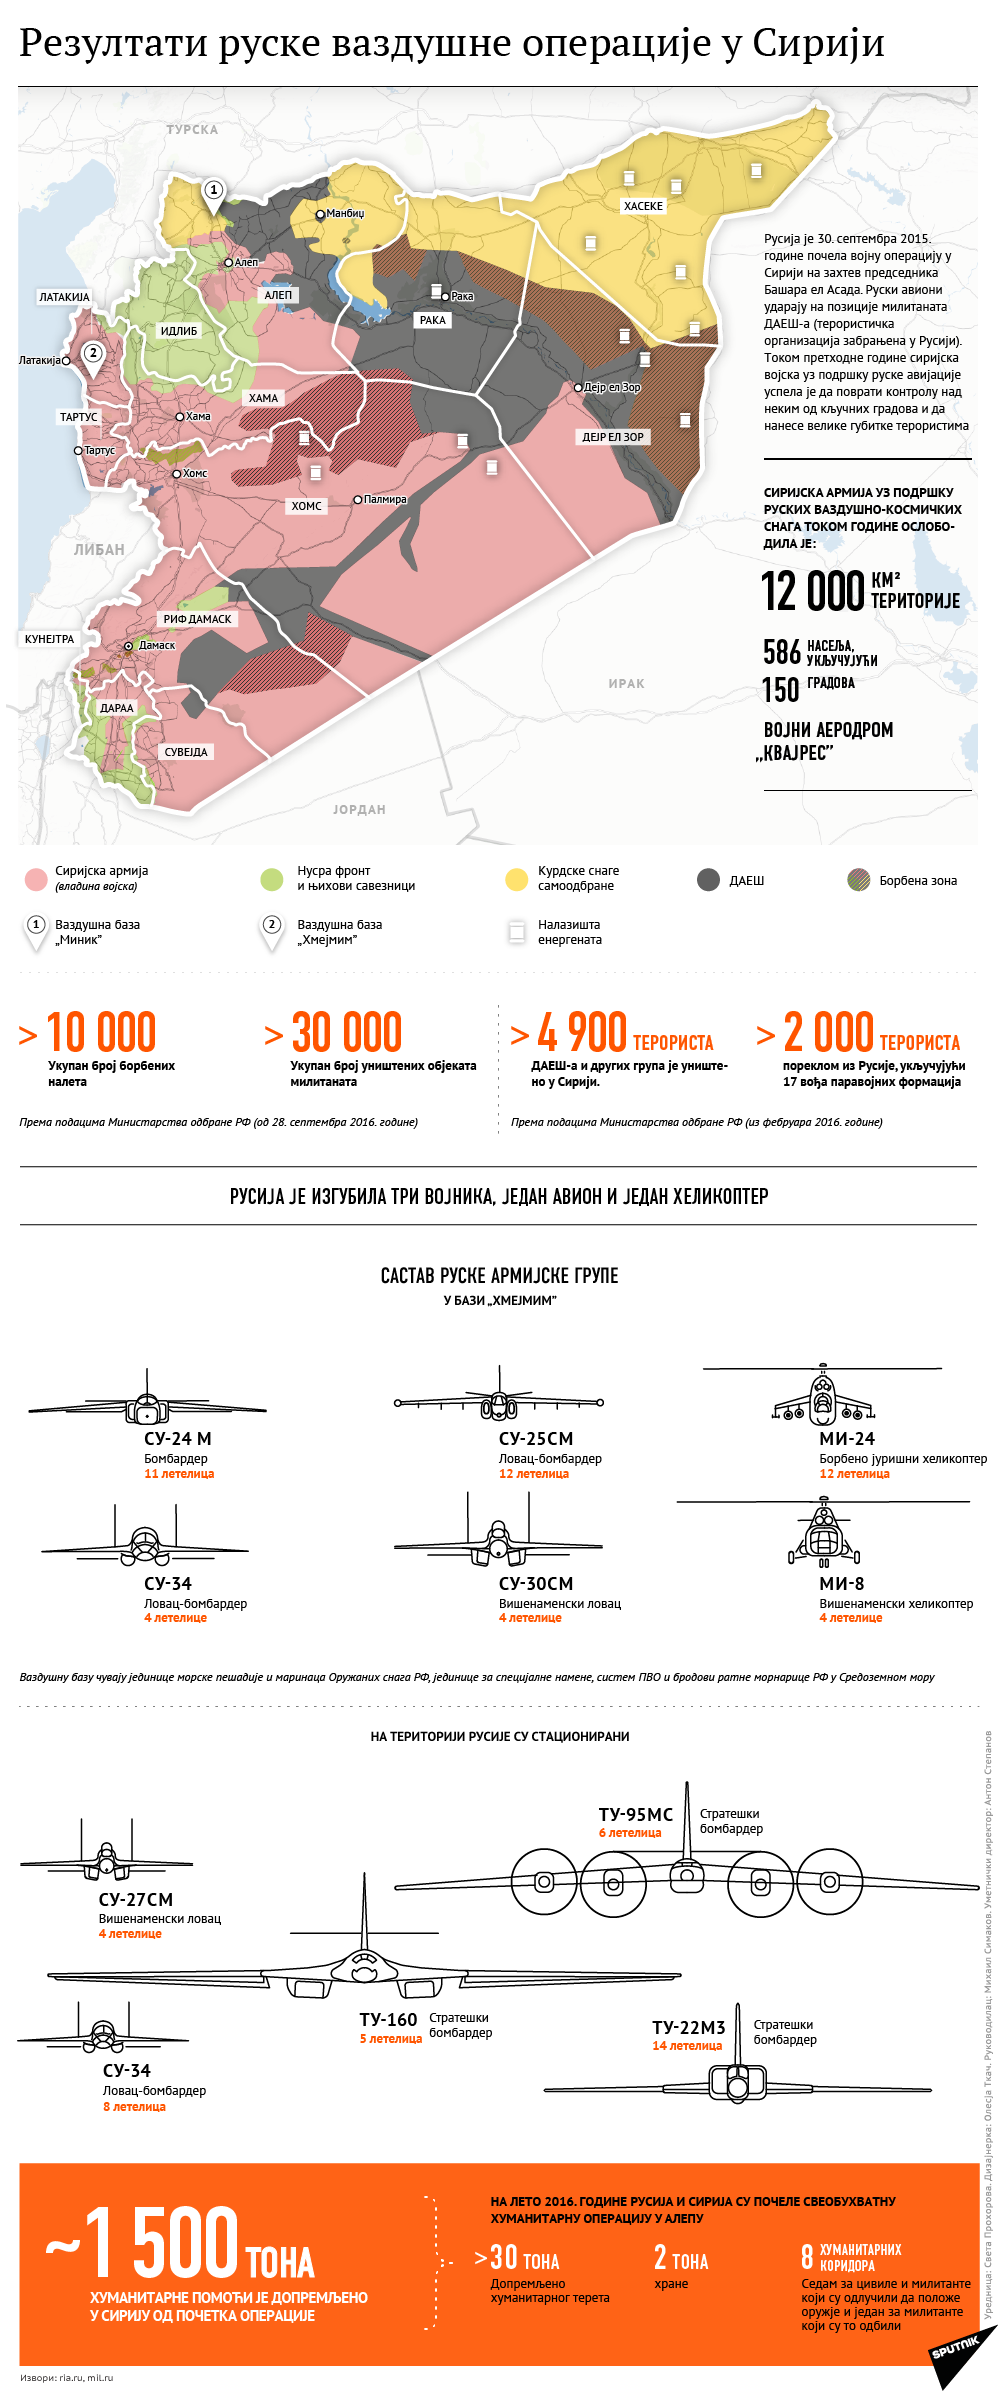 Резултати руске војне операције у Сирији - Sputnik Србија